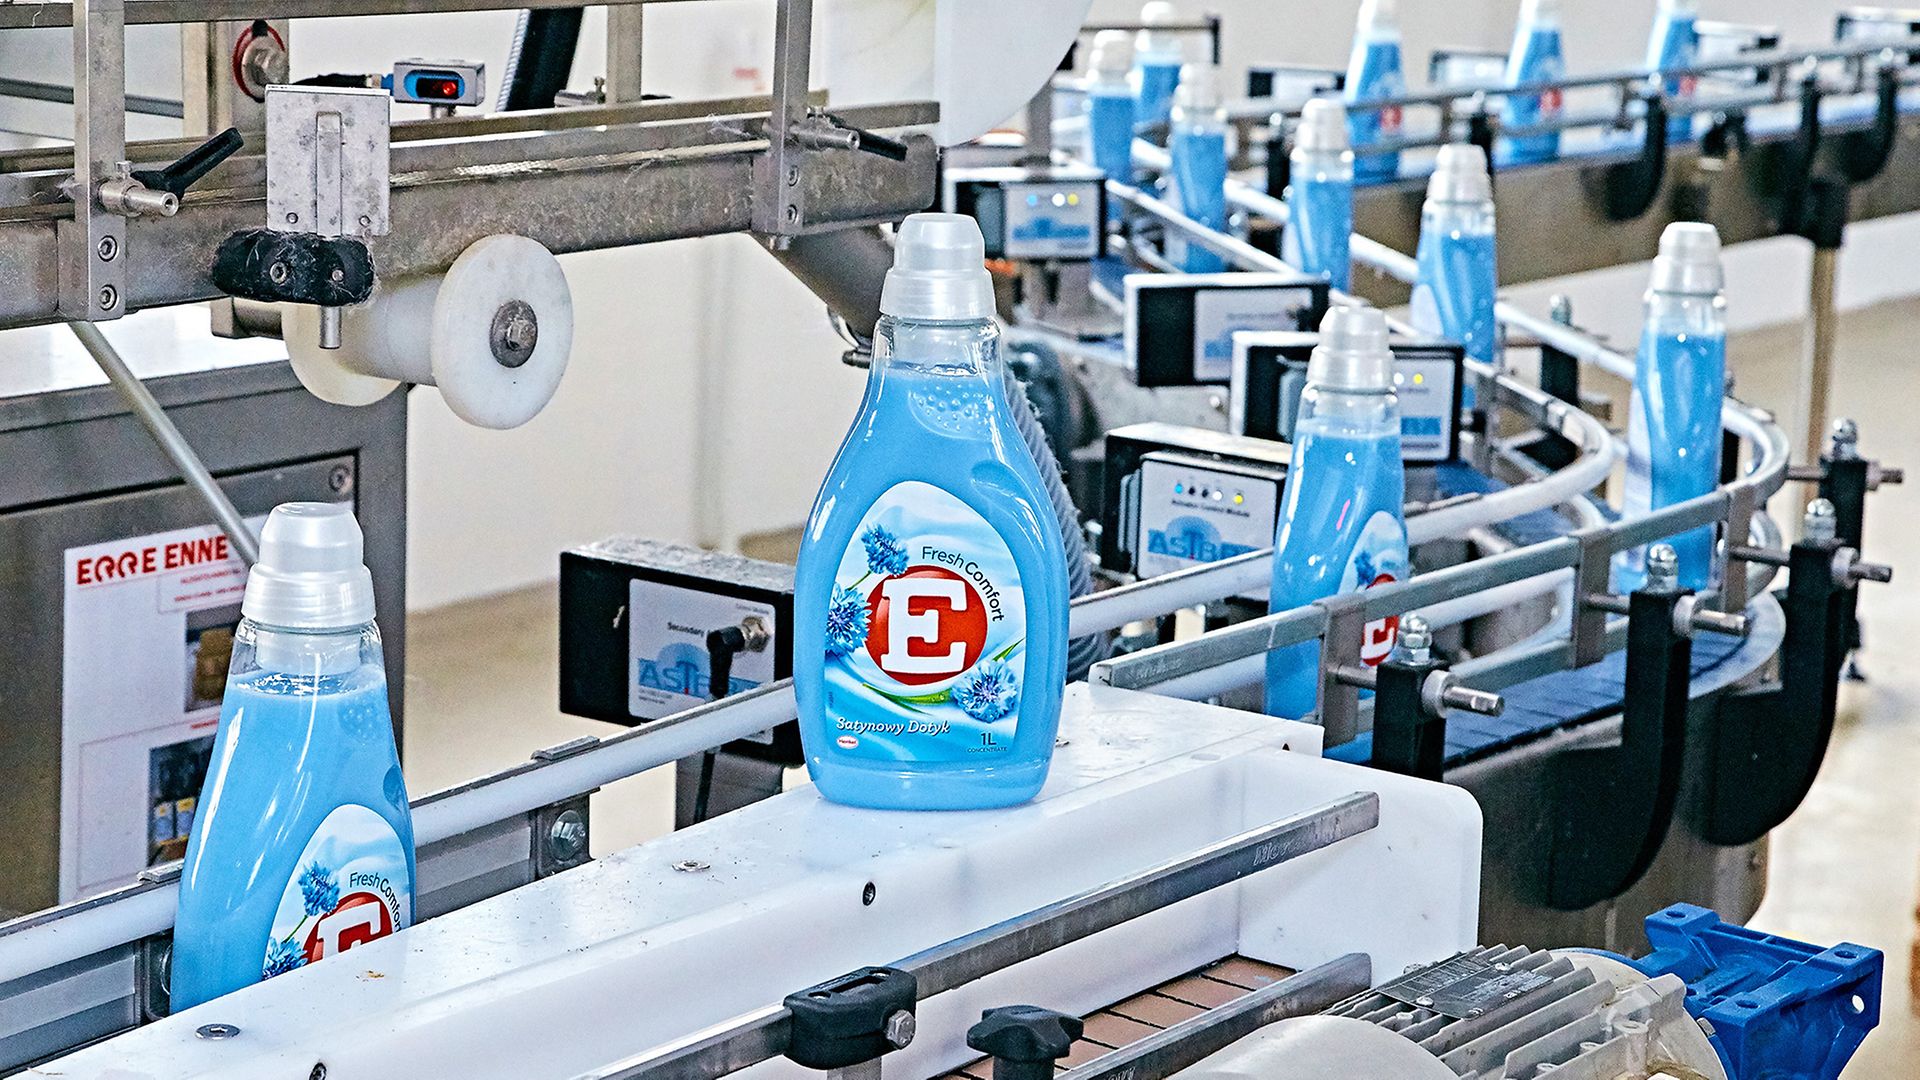 The detergent brand 